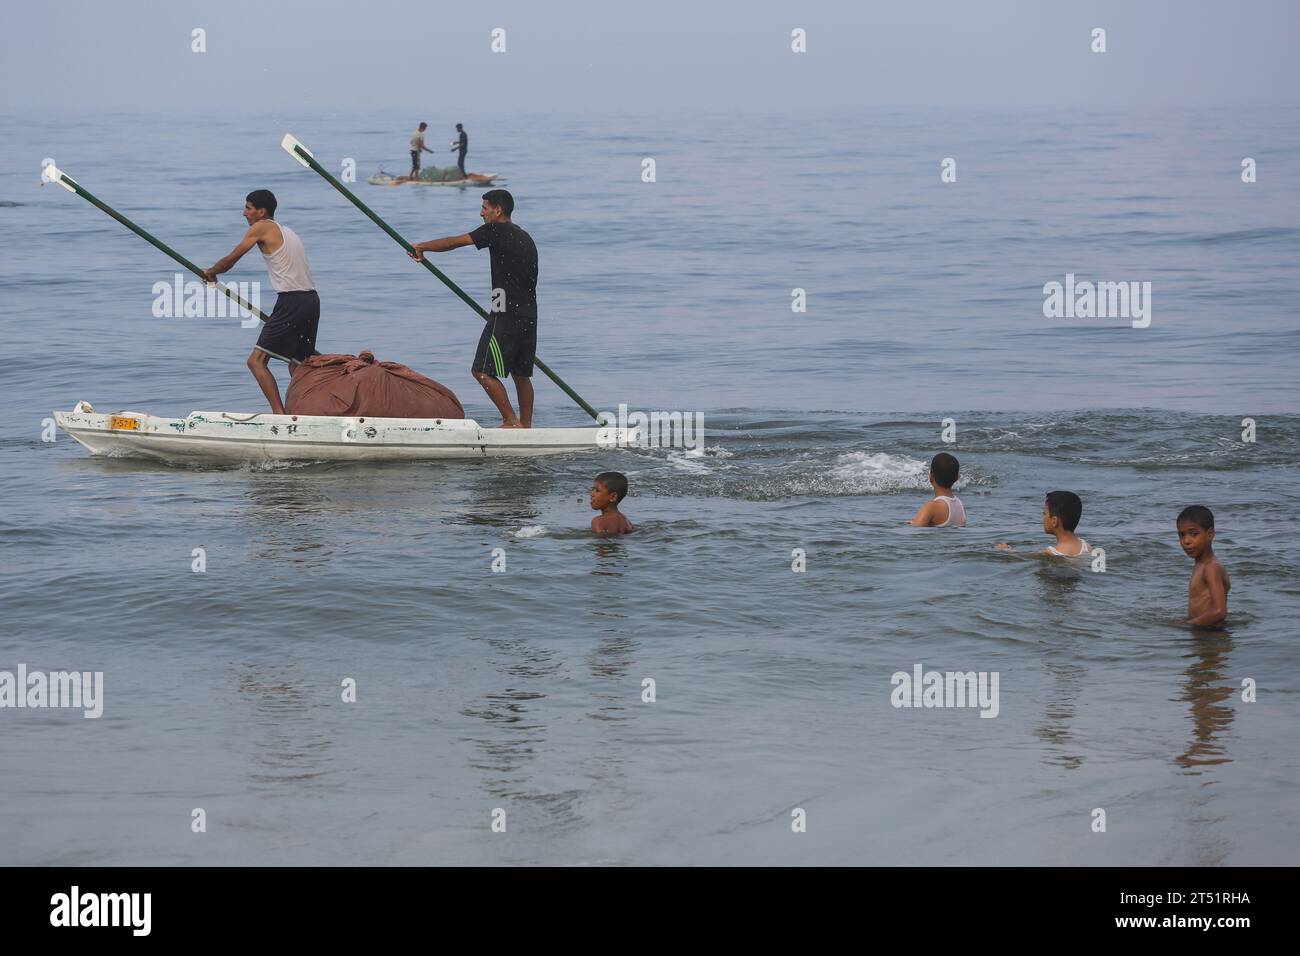 Pescadores palestinos vistos en su barco de pesca mientras los palestinos se bañan, mientras otros (no vistos) lavan su ropa y lavan los utensilios de cocina usando agua de mar debido a la falta de agua dulce y electricidad, a lo largo de la playa de Deir el-Balah en el sur de la Franja de Gaza el 2 de noviembre de 2023, en medio de las batallas en curso entre Israel y el grupo palestino Hamas. Israel golpeó Gaza, gobernada por Hamás, el 29 de octubre, en una creciente campaña aérea y terrestre, mientras la ONU advirtió que el orden civil estaba "empezando a derrumbarse" en el asediado territorio palestino. Miles de civiles, tanto palestinos como israelíes, han d Foto de stock